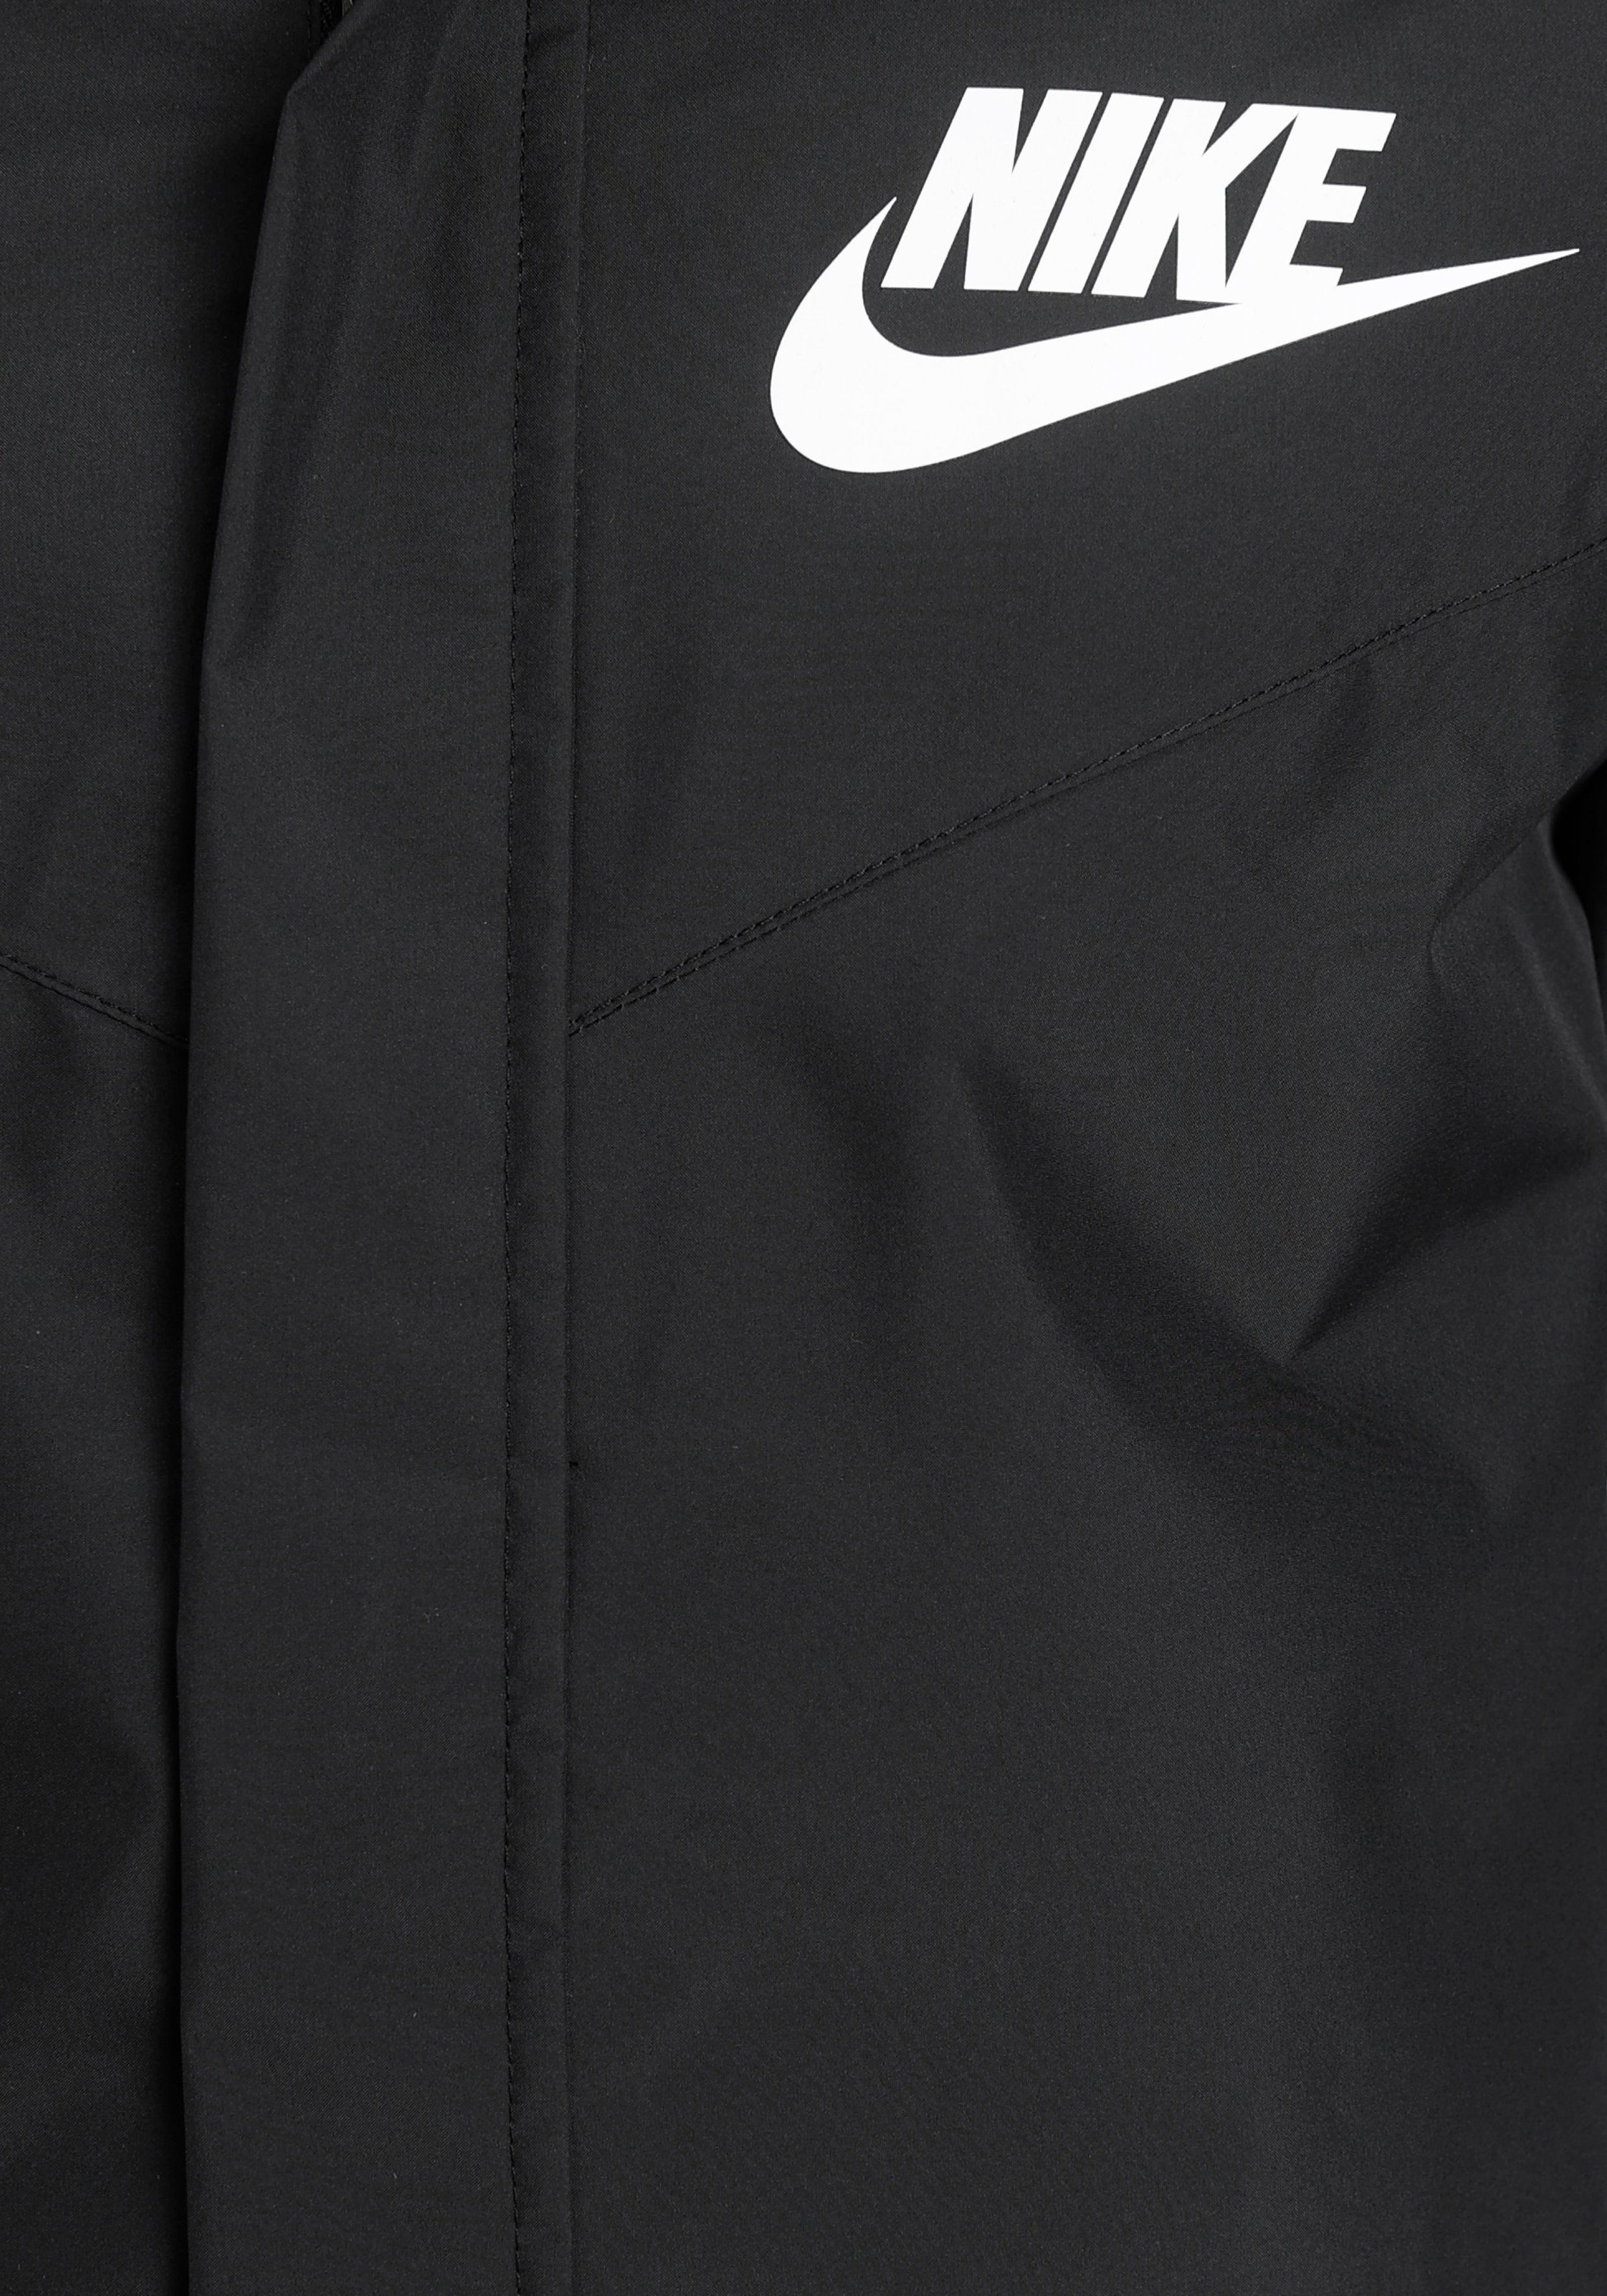 BLACK/BLACK/WHITE Big (Boys) Jacket Sportswear Kids' Windrunner Nike Storm-FIT Windbreaker